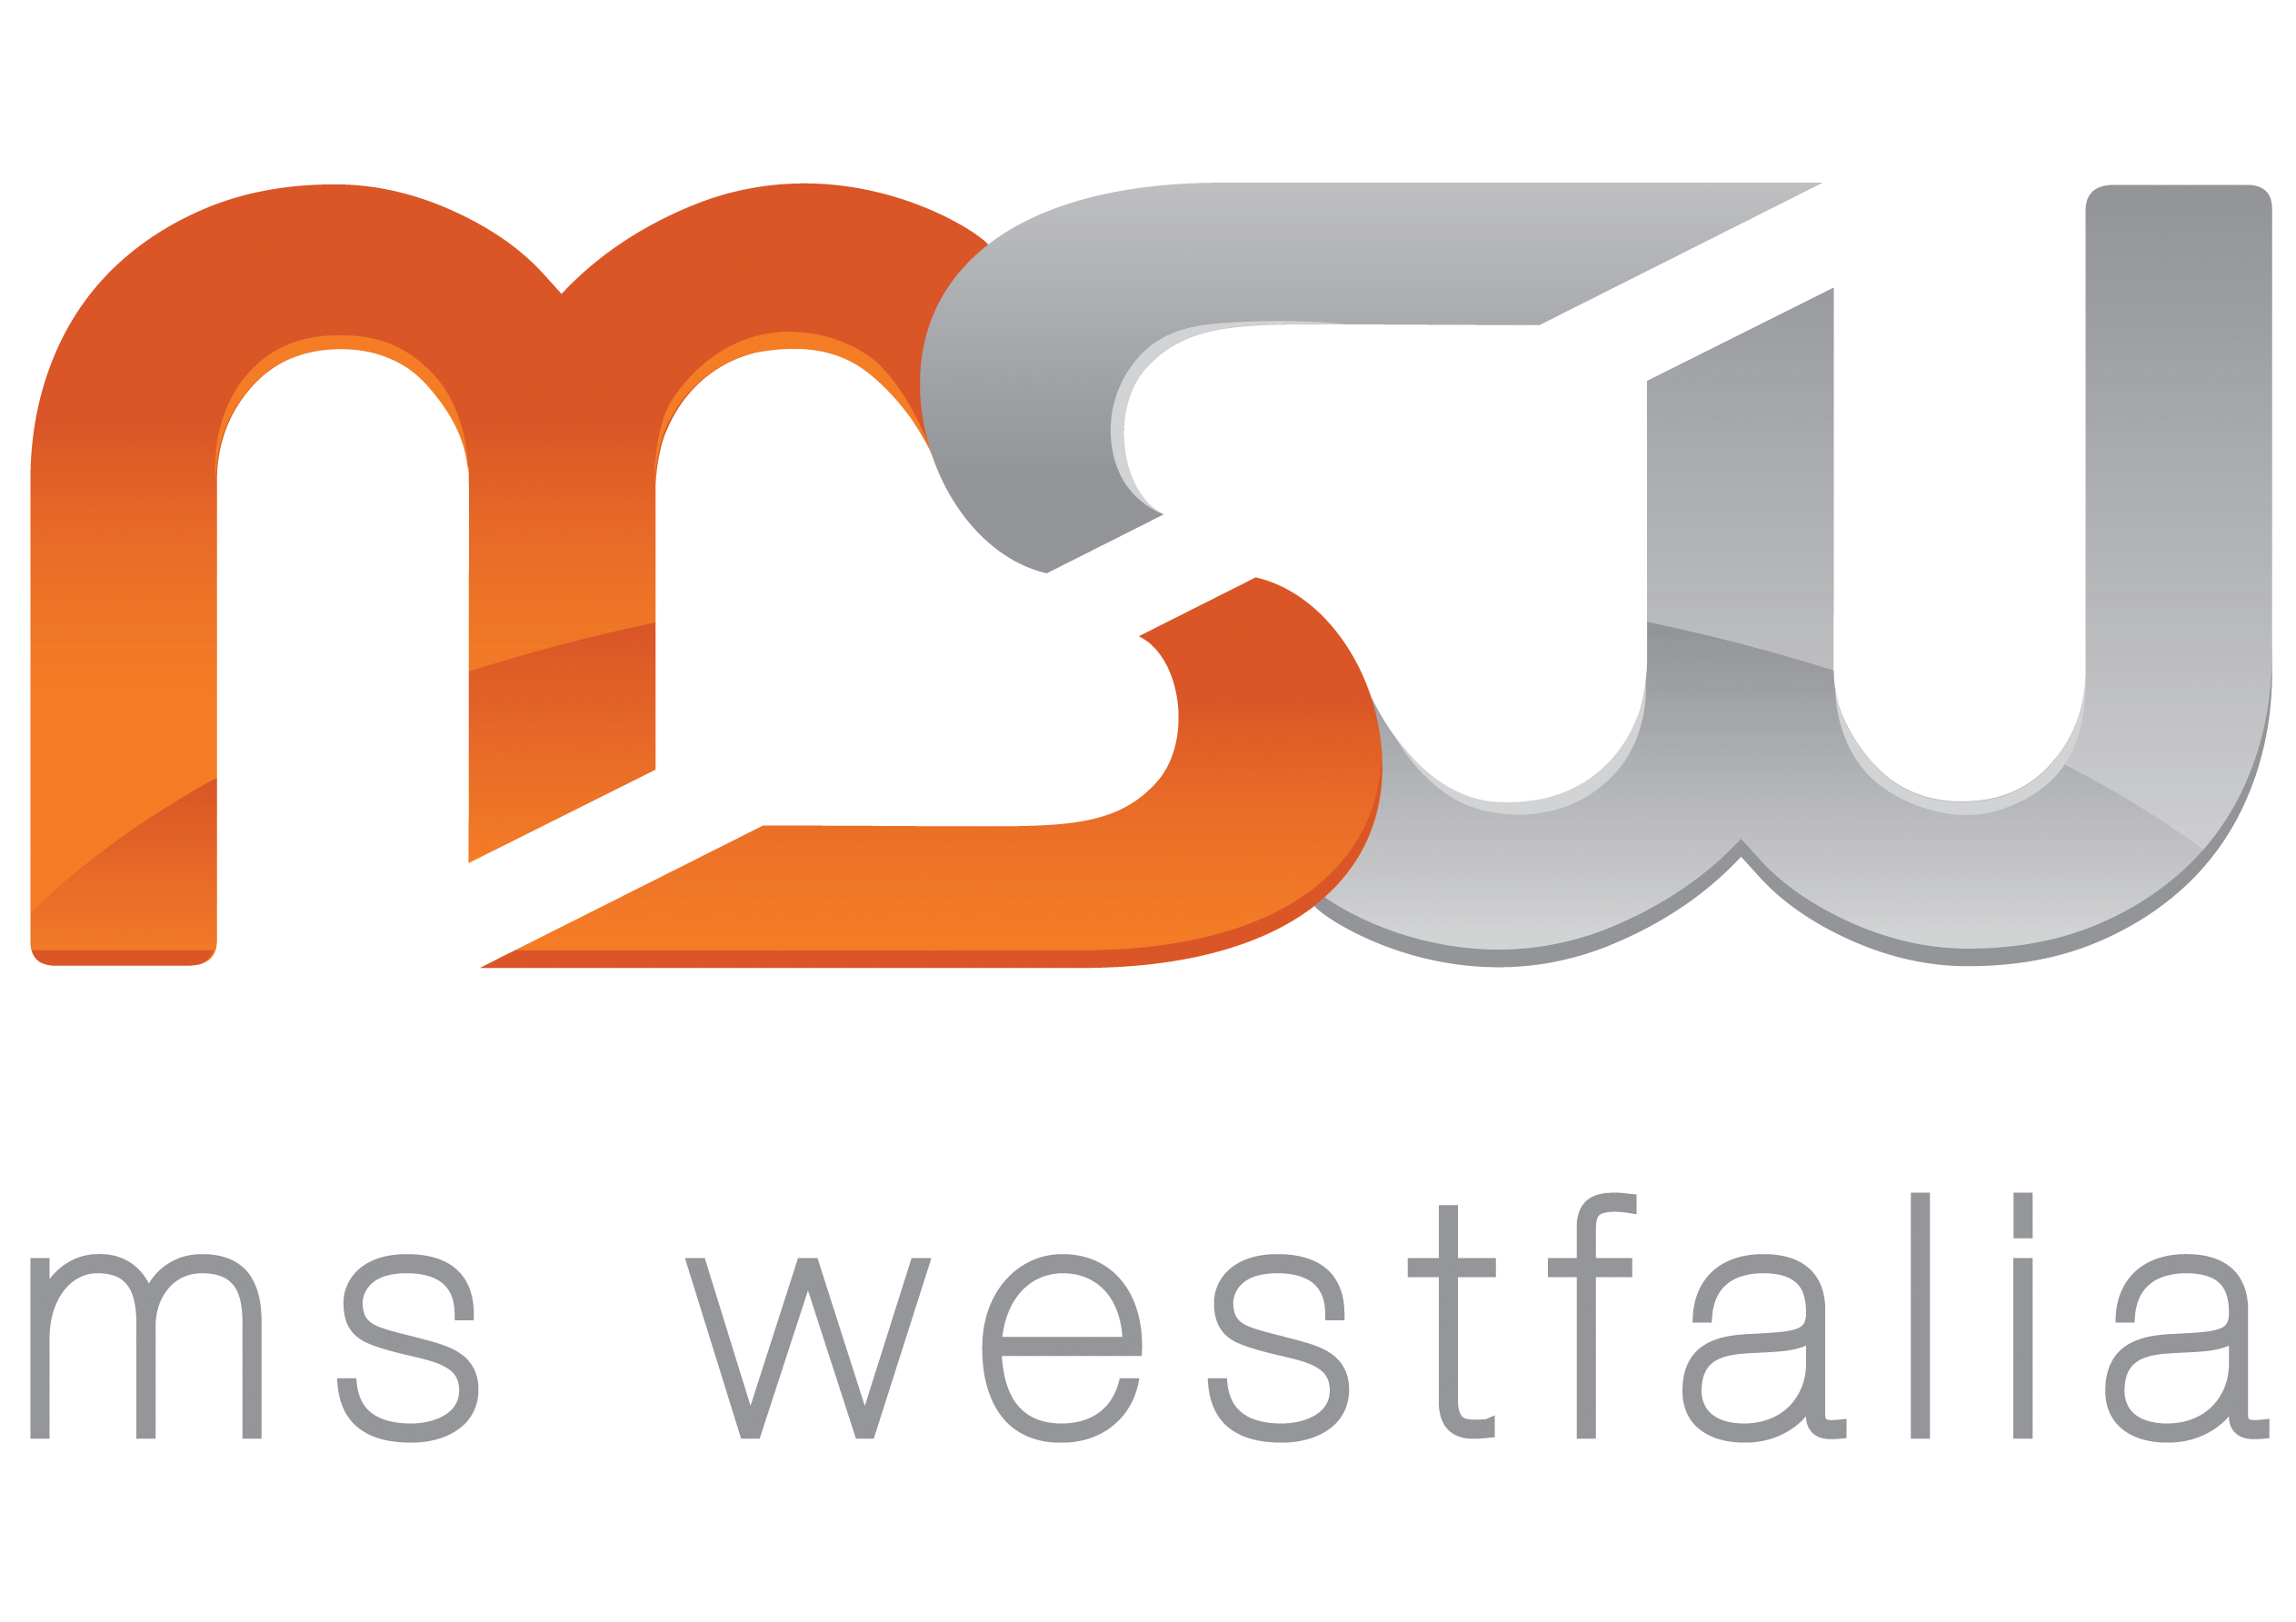 MS Westfalia GmbH